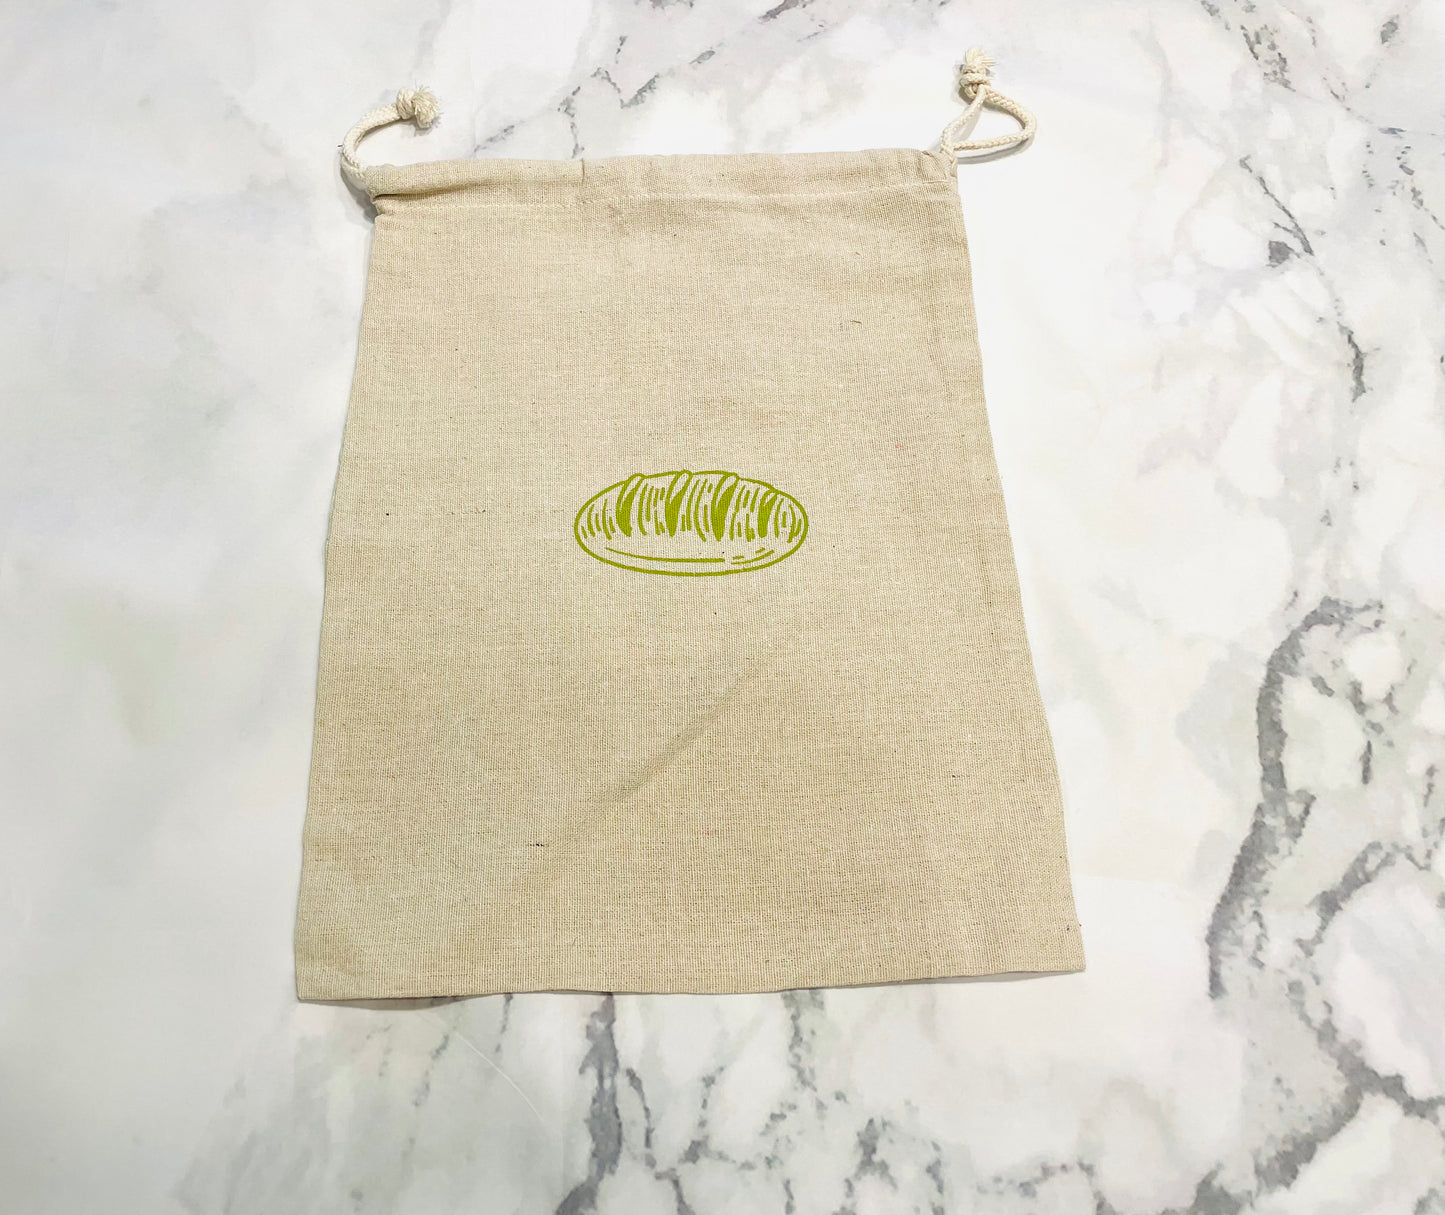 Unbleached Reusable Bread Cotton Linen Bags - Set of 2